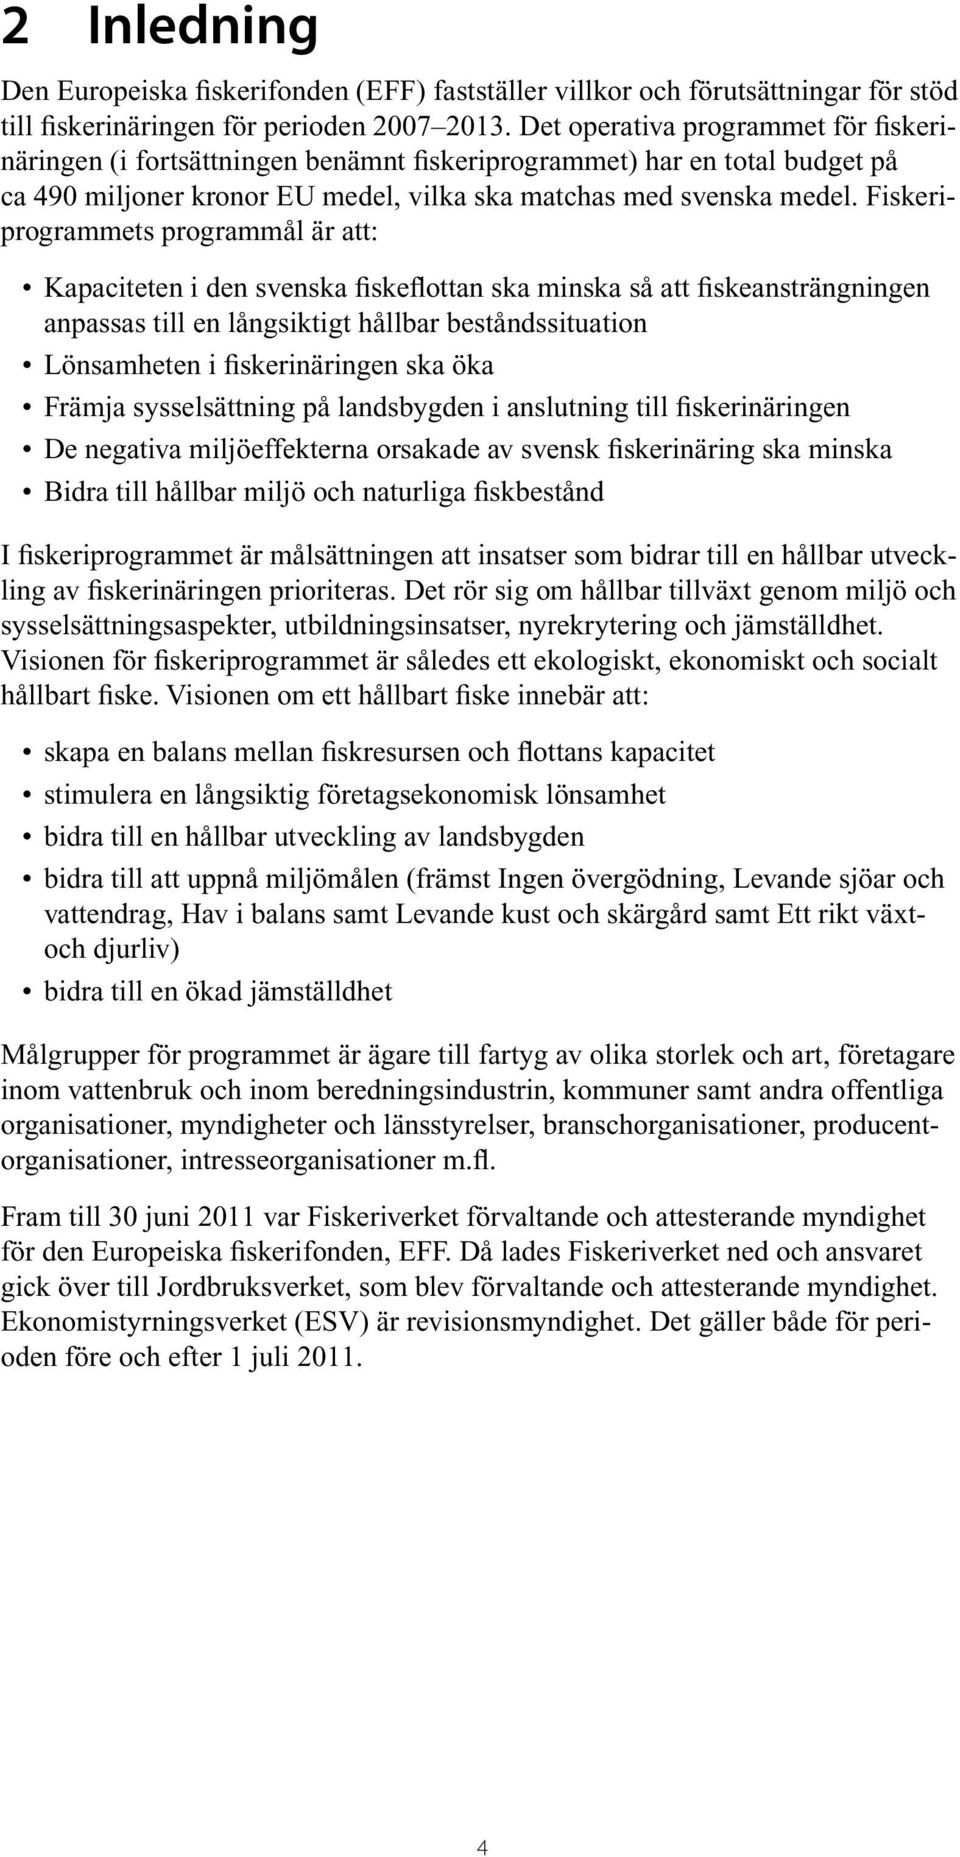 Fiskeriprogrammets programmål är att: Kapaciteten i den svenska fiskeflottan ska minska så att fiskeansträngningen anpassas till en långsiktigt hållbar beståndssituation Lönsamheten i fiskerinäringen